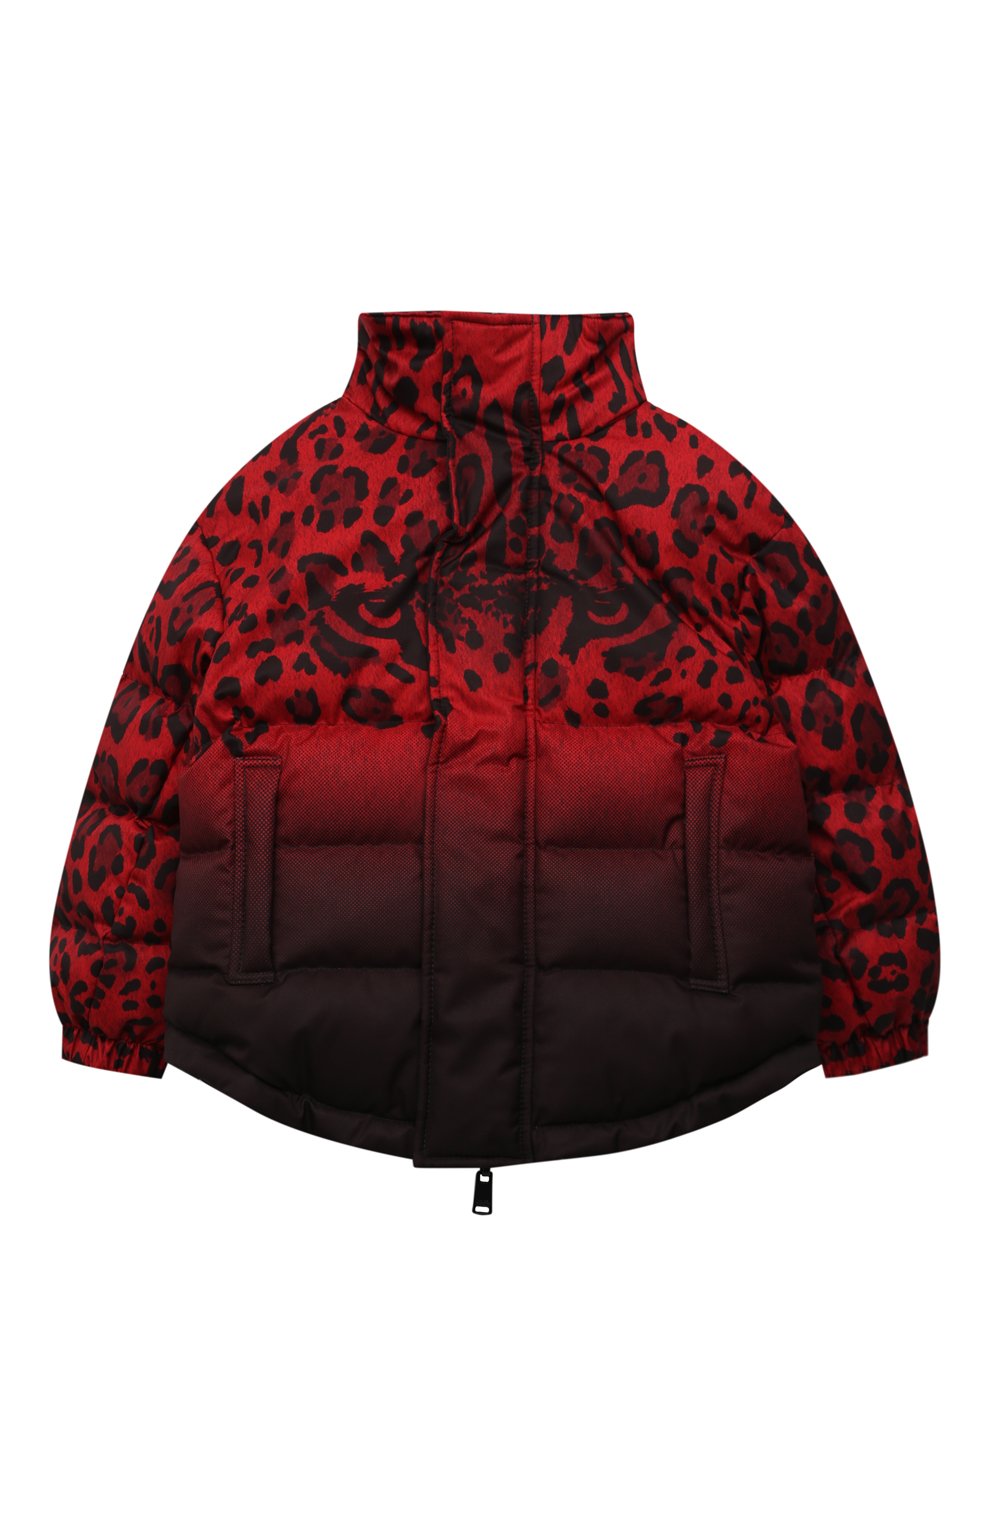 Верхняя одежда Dolce & Gabbana, Утепленная куртка Dolce & Gabbana, Италия, Красный, Полиэстер: 100%; Подкладка-полиэстер: 100%; Наполнитель-полиэстер: 100%;, 12465157  - купить